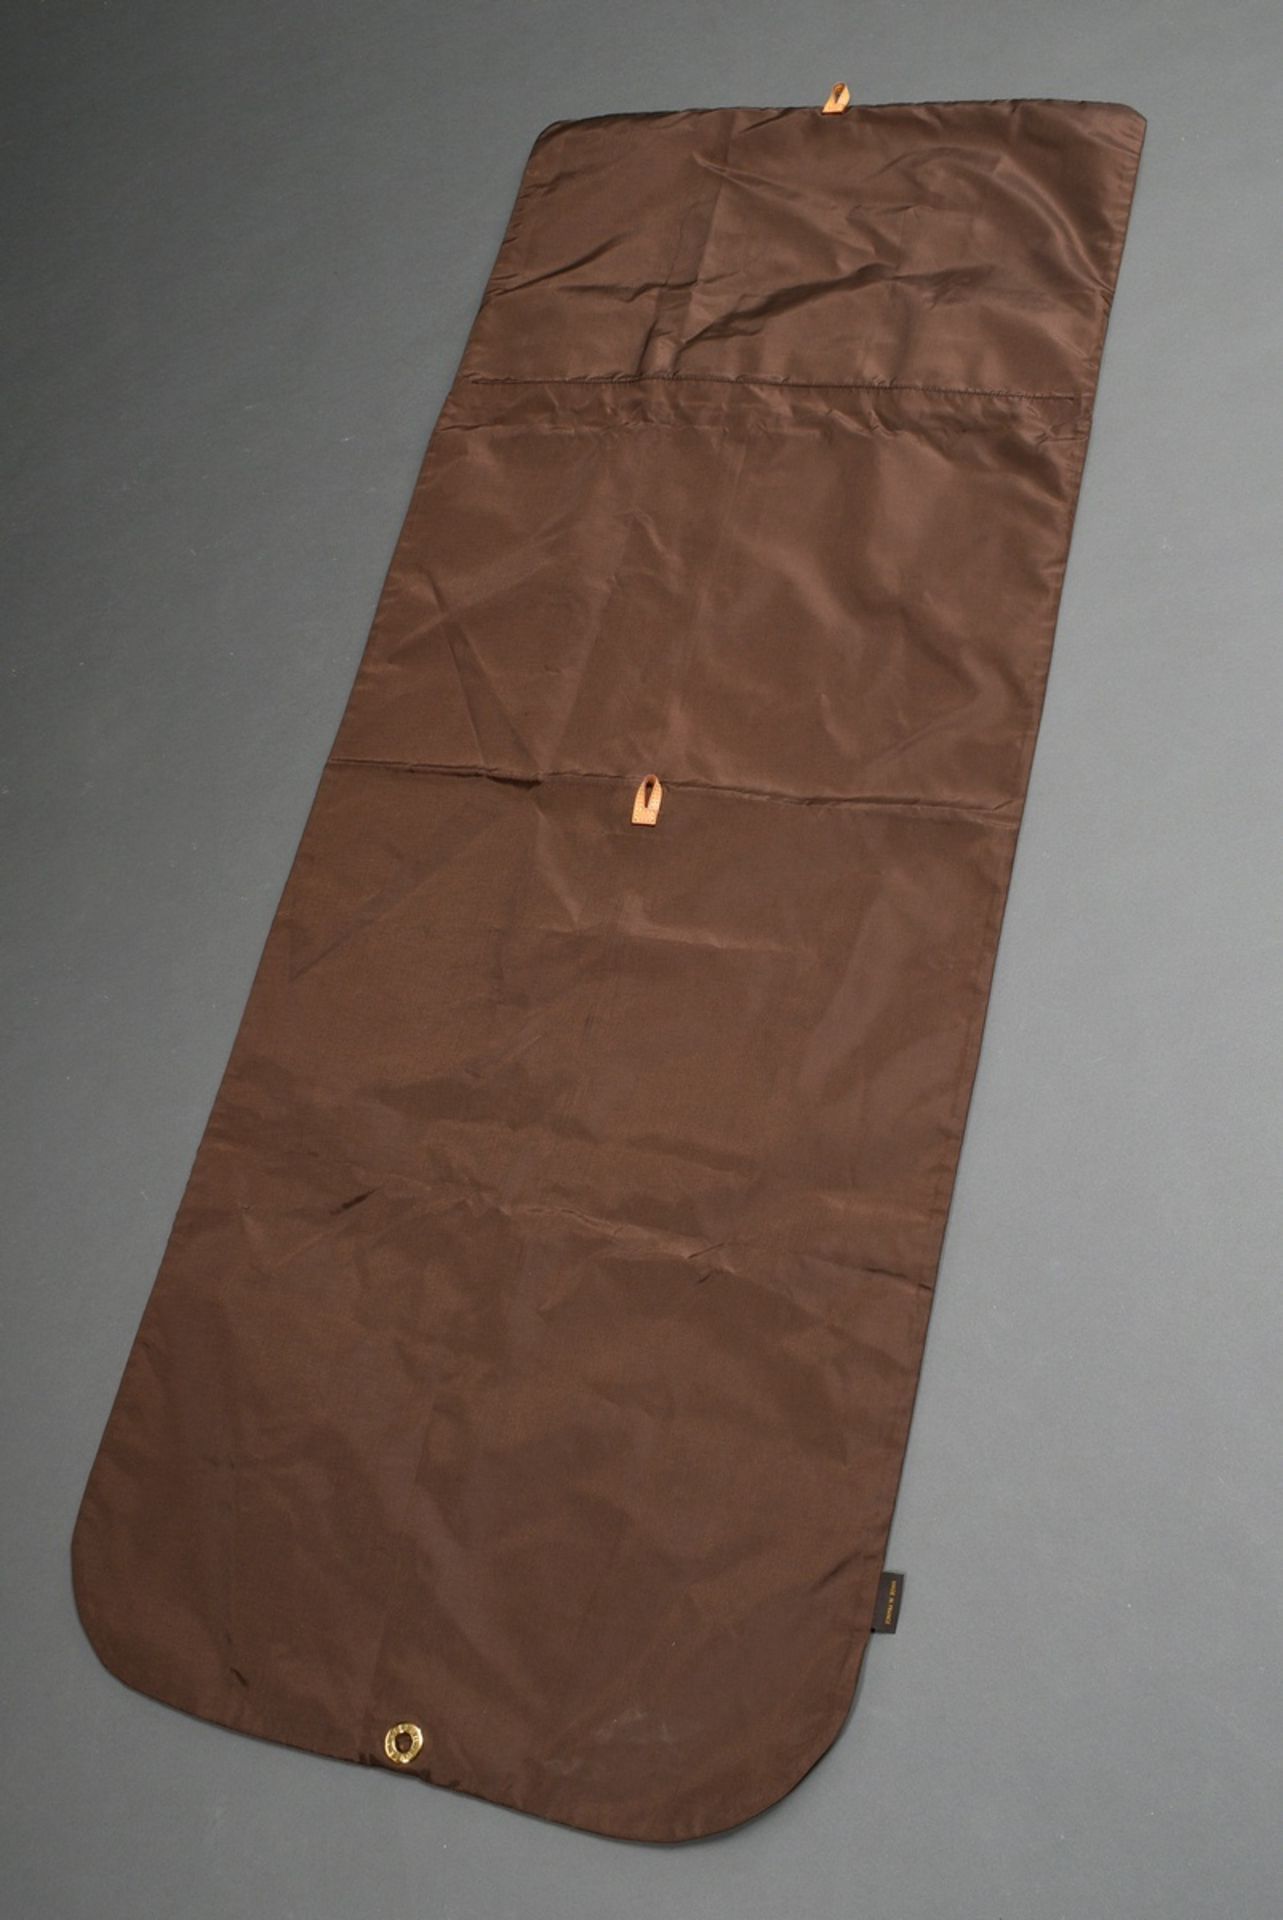 Dunkelbrauner Nylon Louis Vuitton Kleidersack mit heller Lederschlaufe und goldfarbenem Reißverschl - Bild 2 aus 4